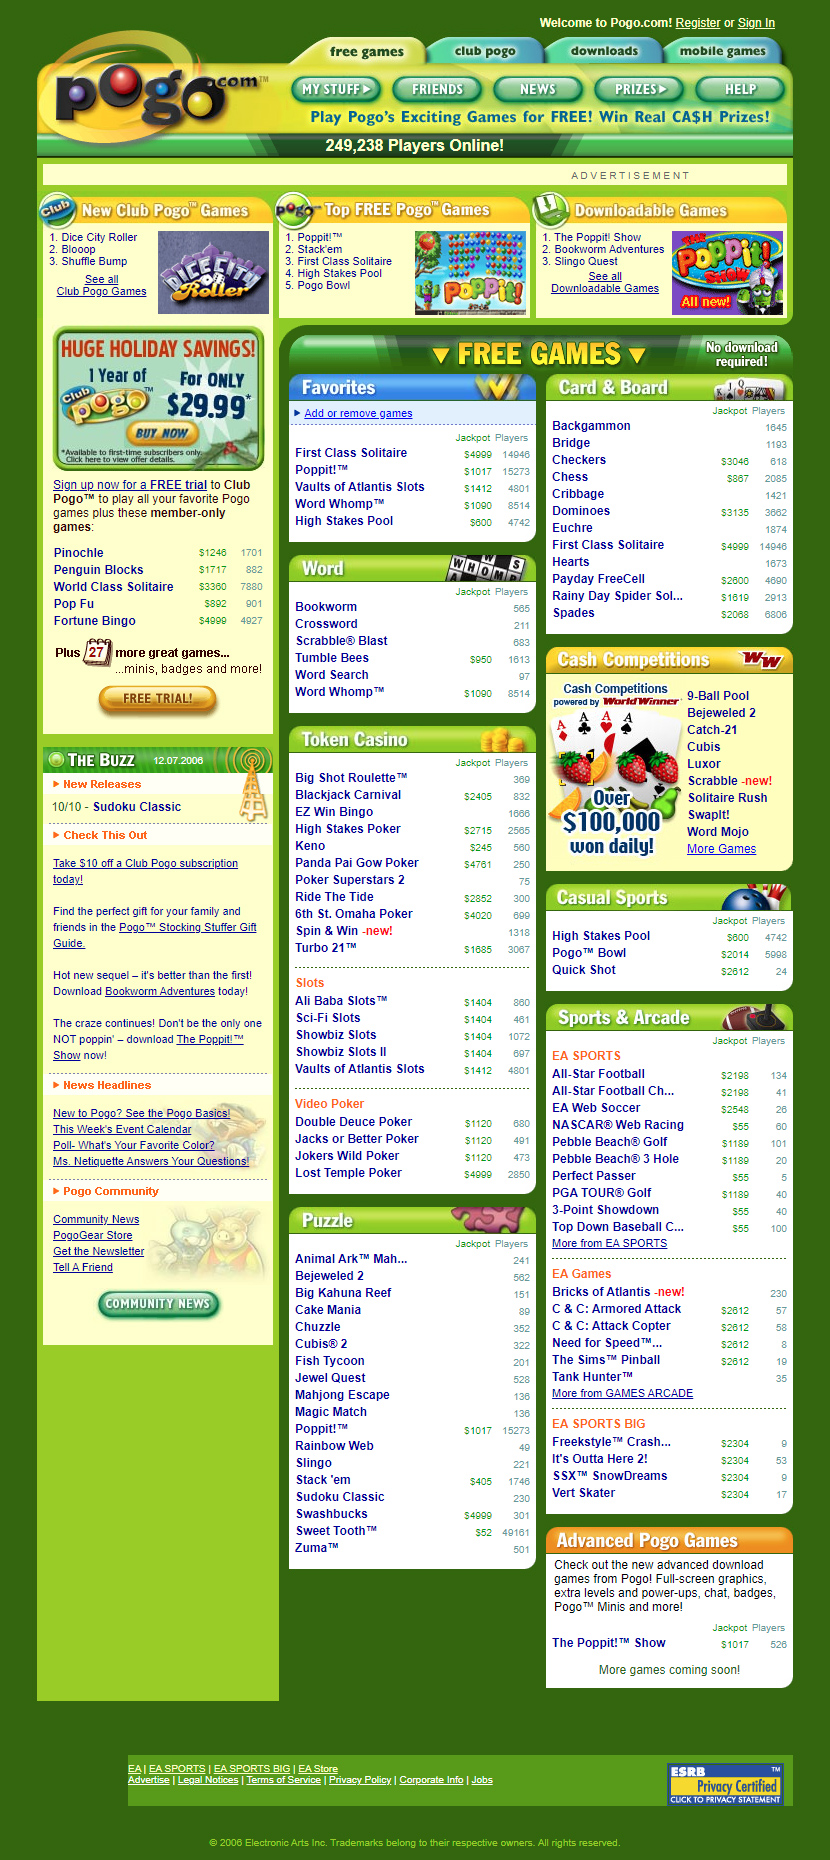 Pogo.com in 2006